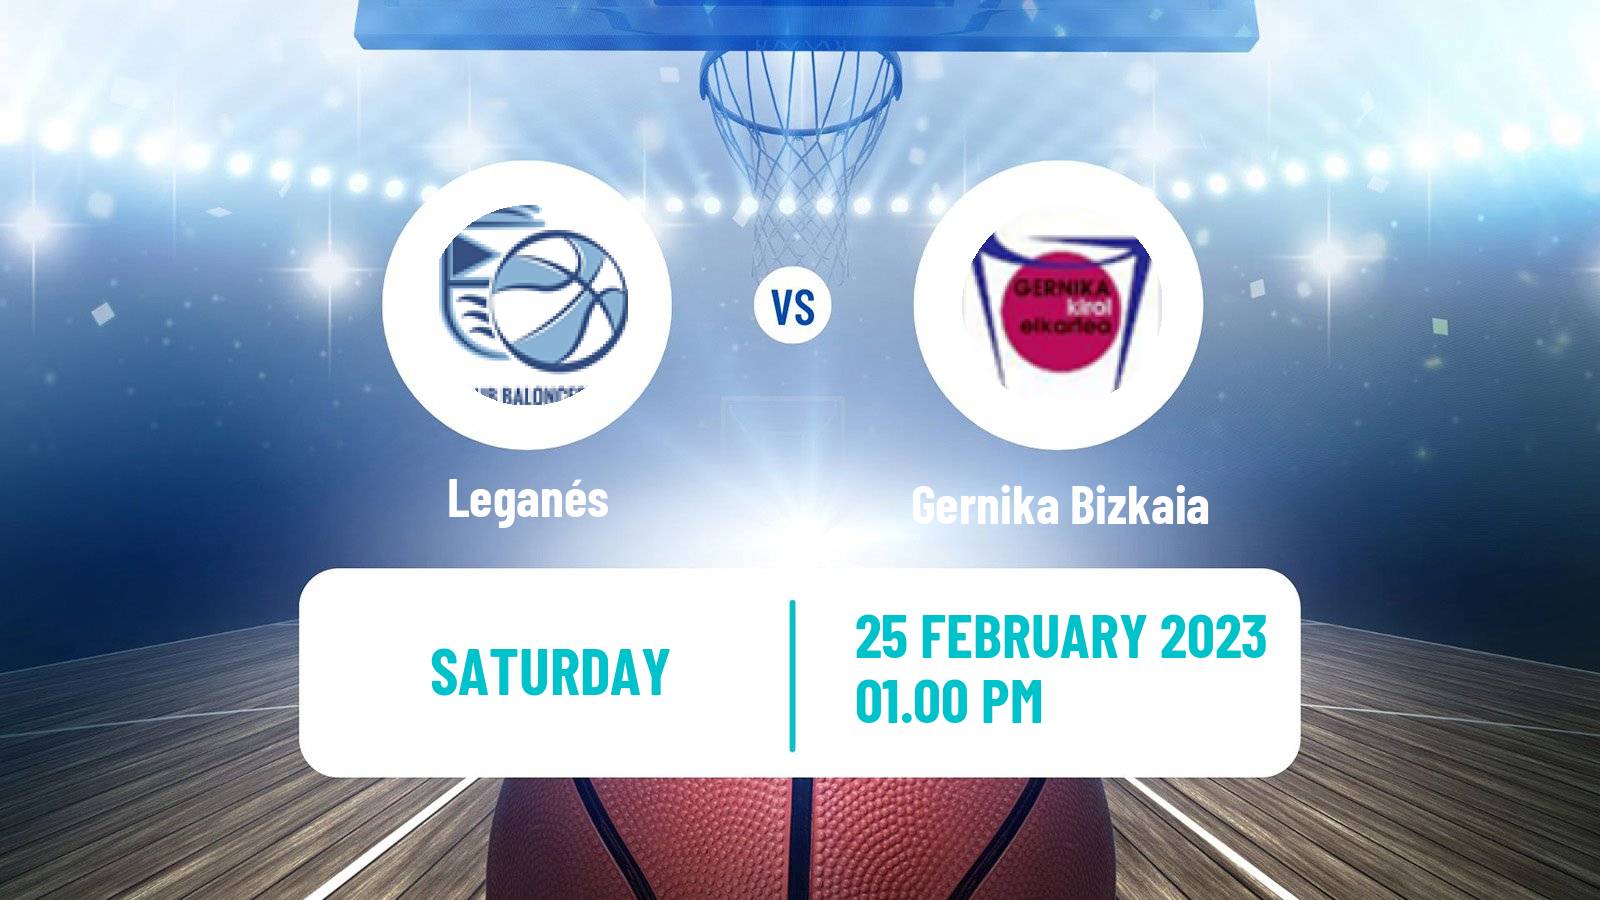 Basketball Spanish Liga Femenina Basketball Leganés - Gernika Bizkaia